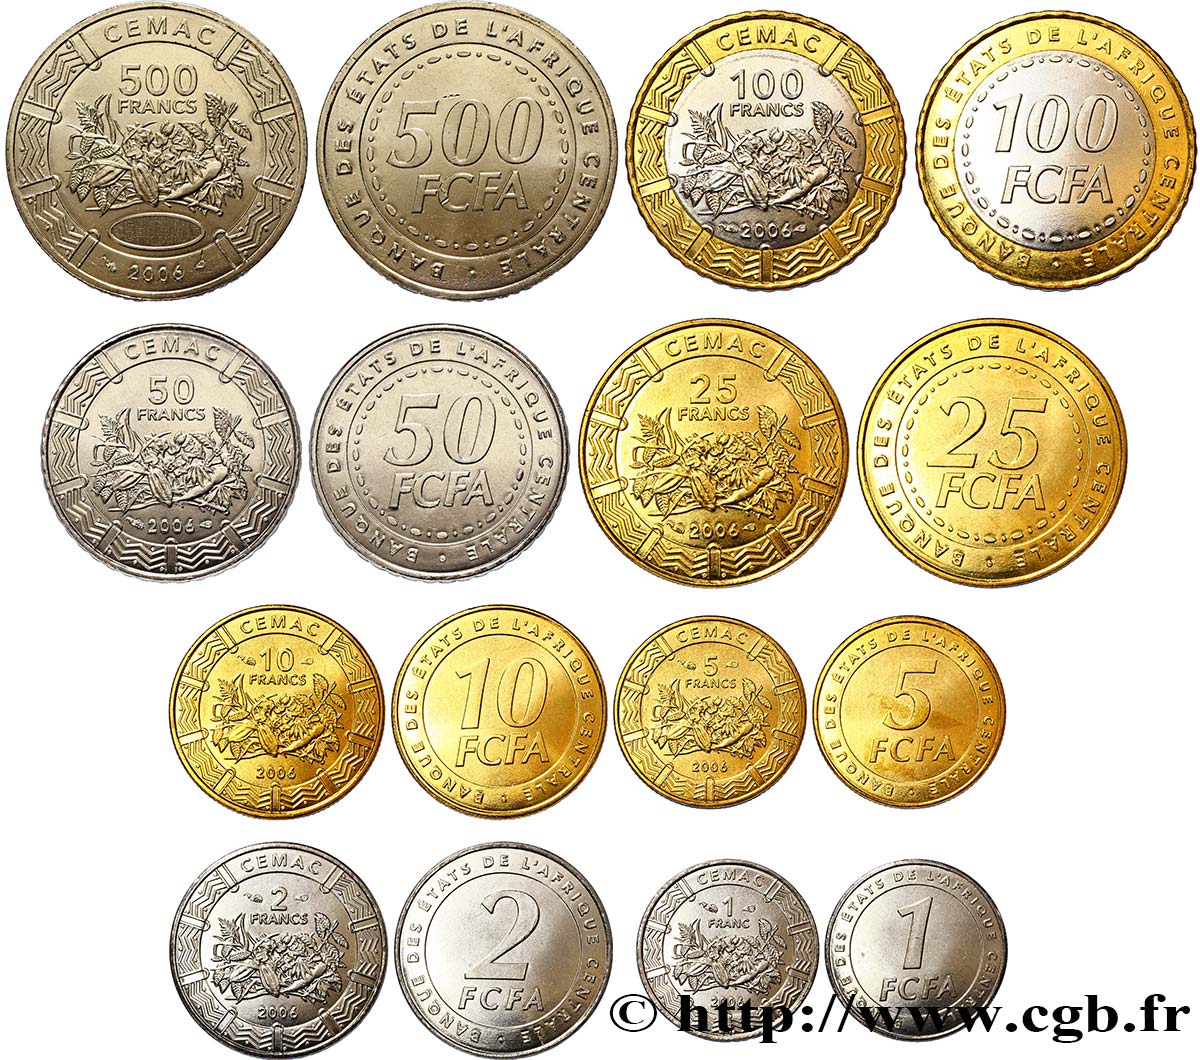 CENTRAL AFRICAN STATES série de 8 monnaies 1, 2, 5, 10, 25, 50, 100 et 500 Francs CEMAC fruits tropicaux 2006 Paris MS 